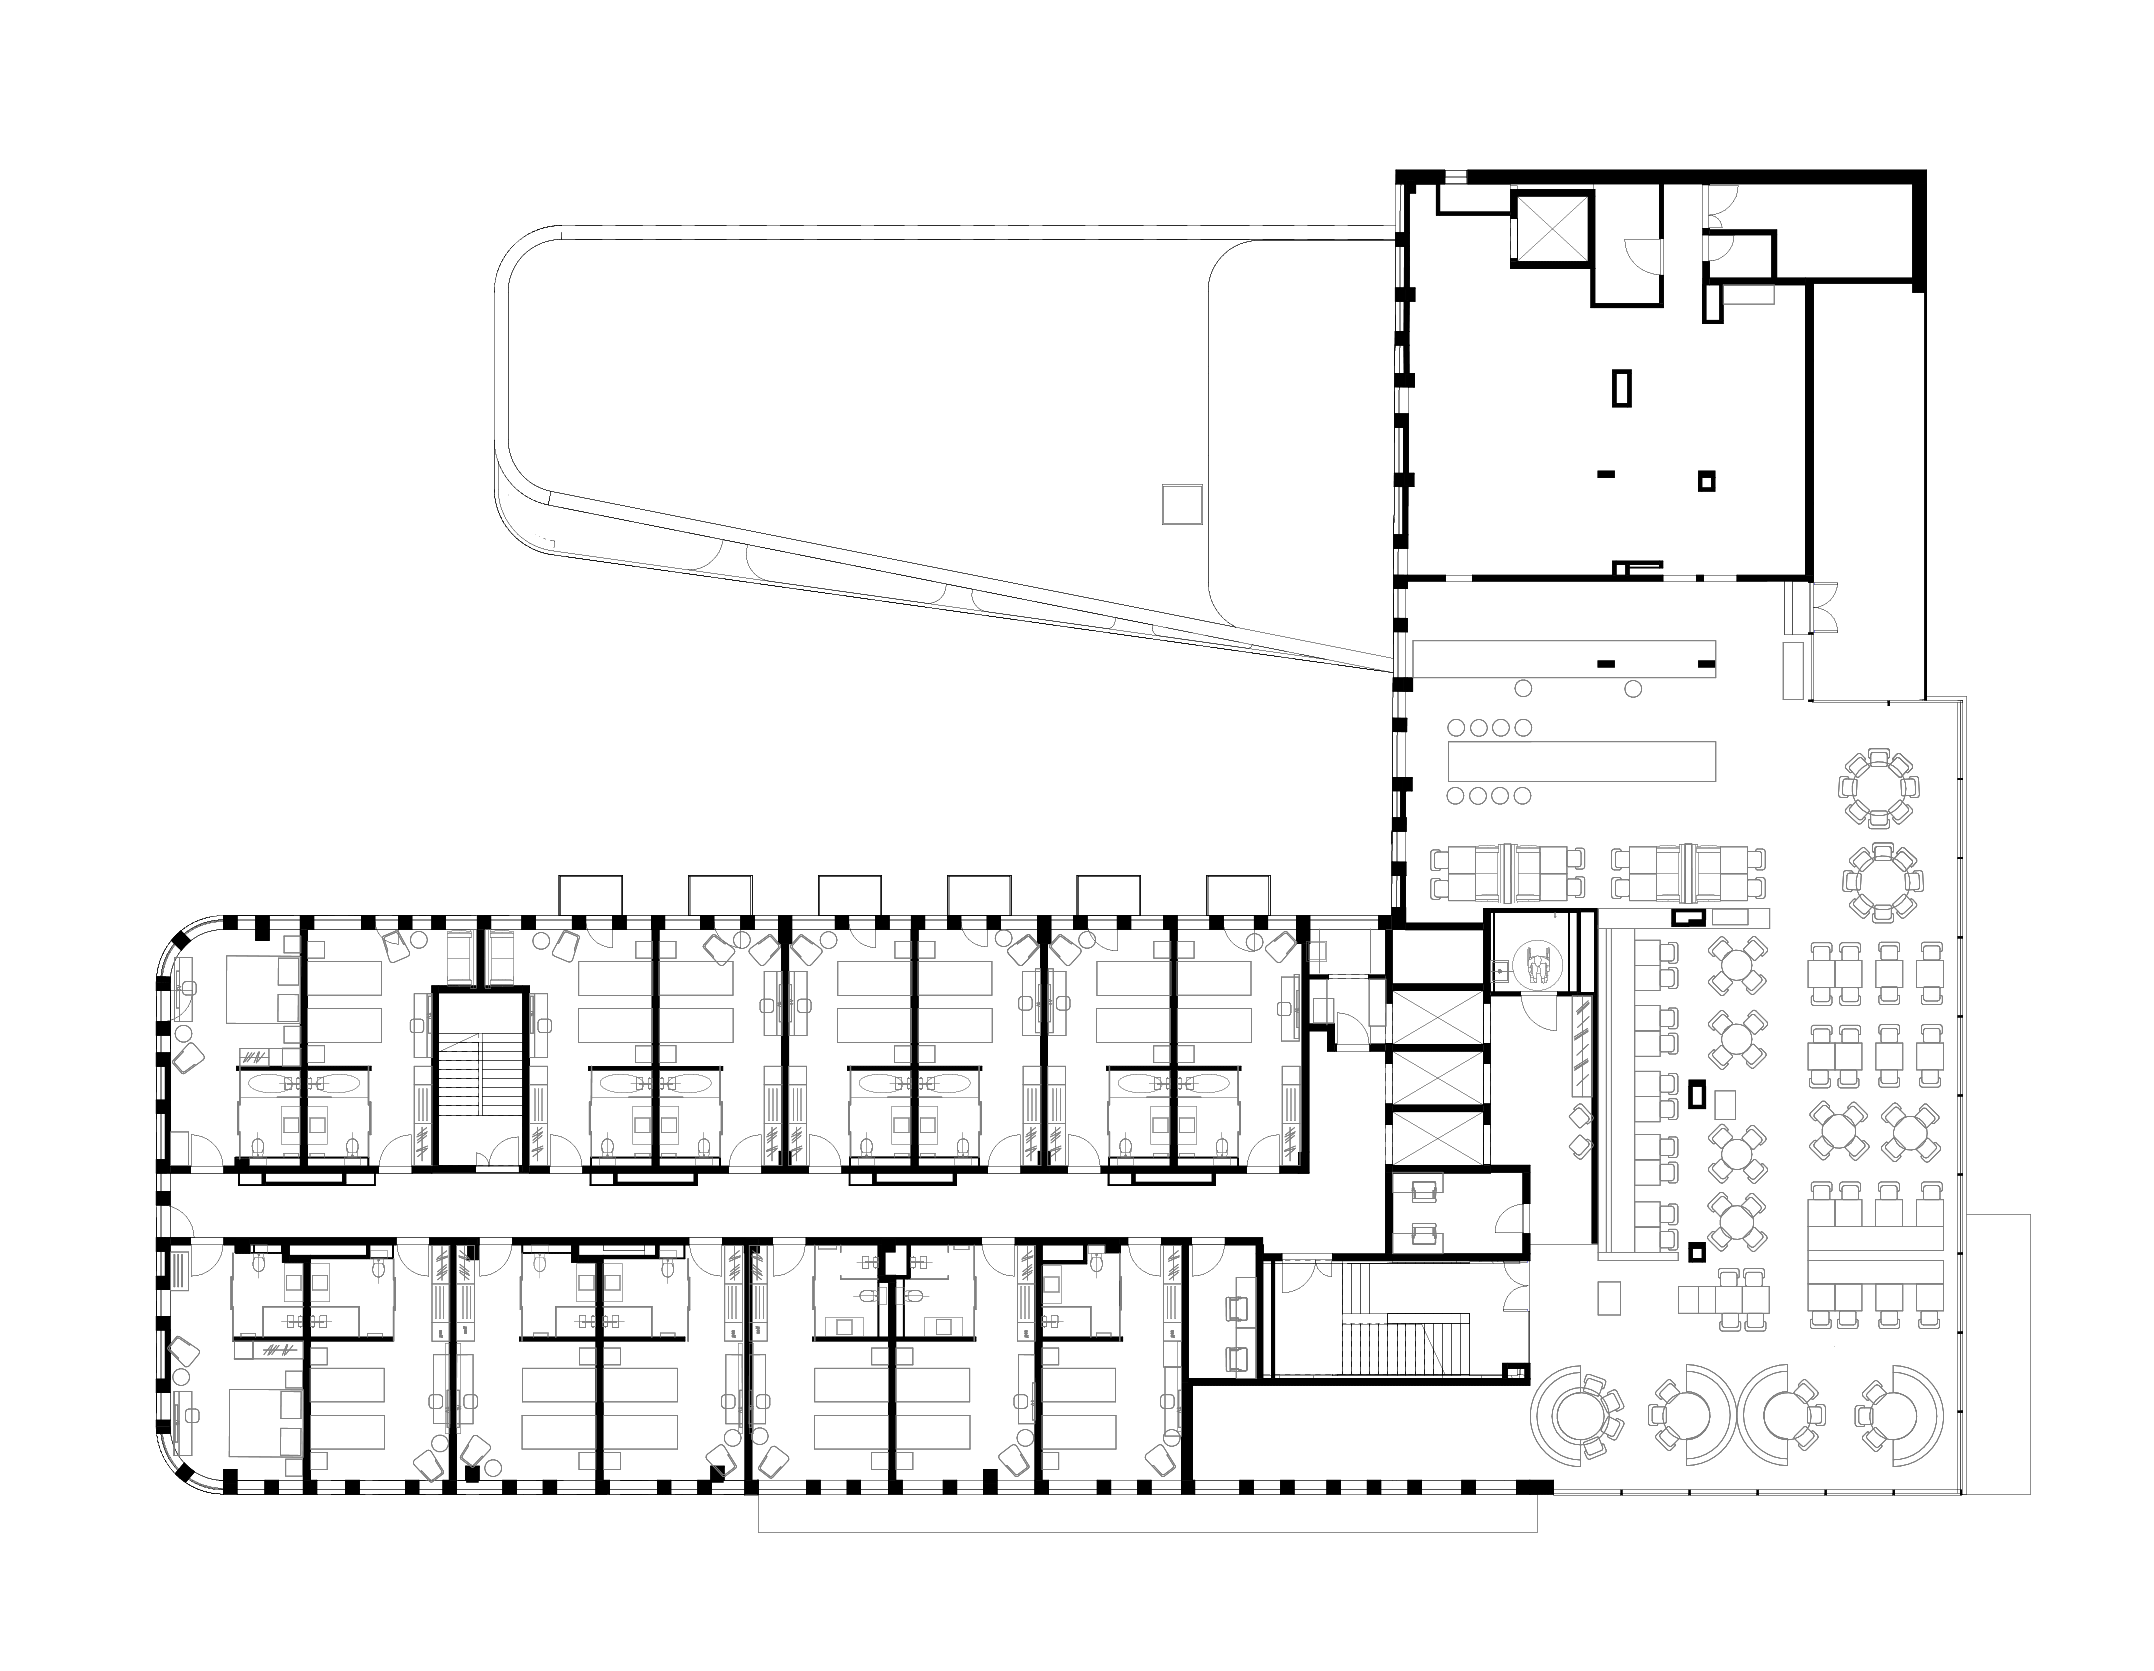 Fifth floor plan